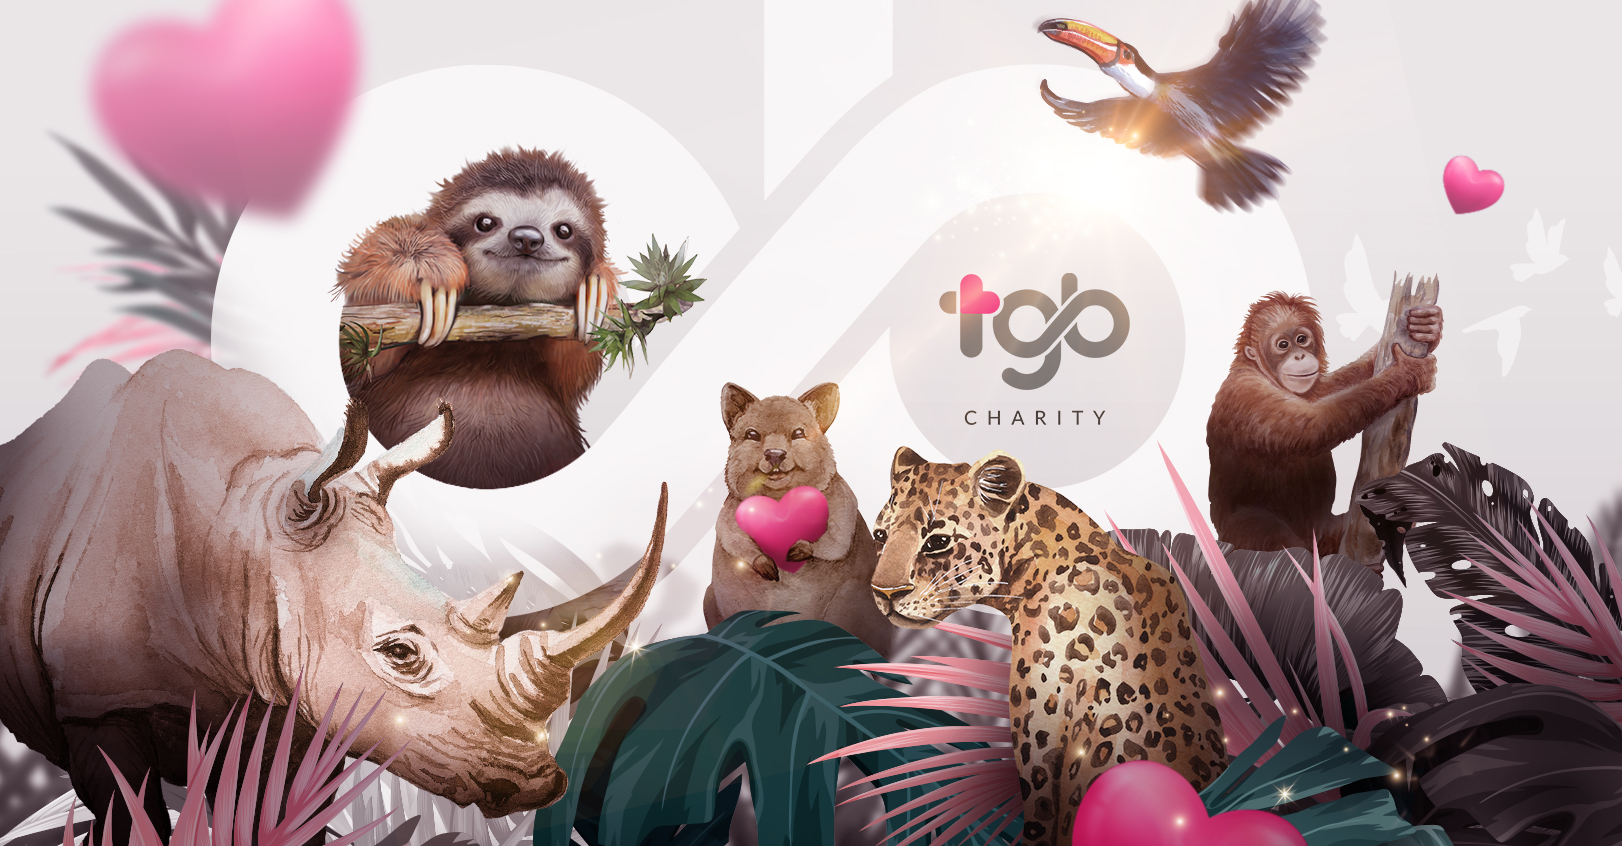 TGB Charity - 地球上所有生物皆息息相关。爱．无分种类